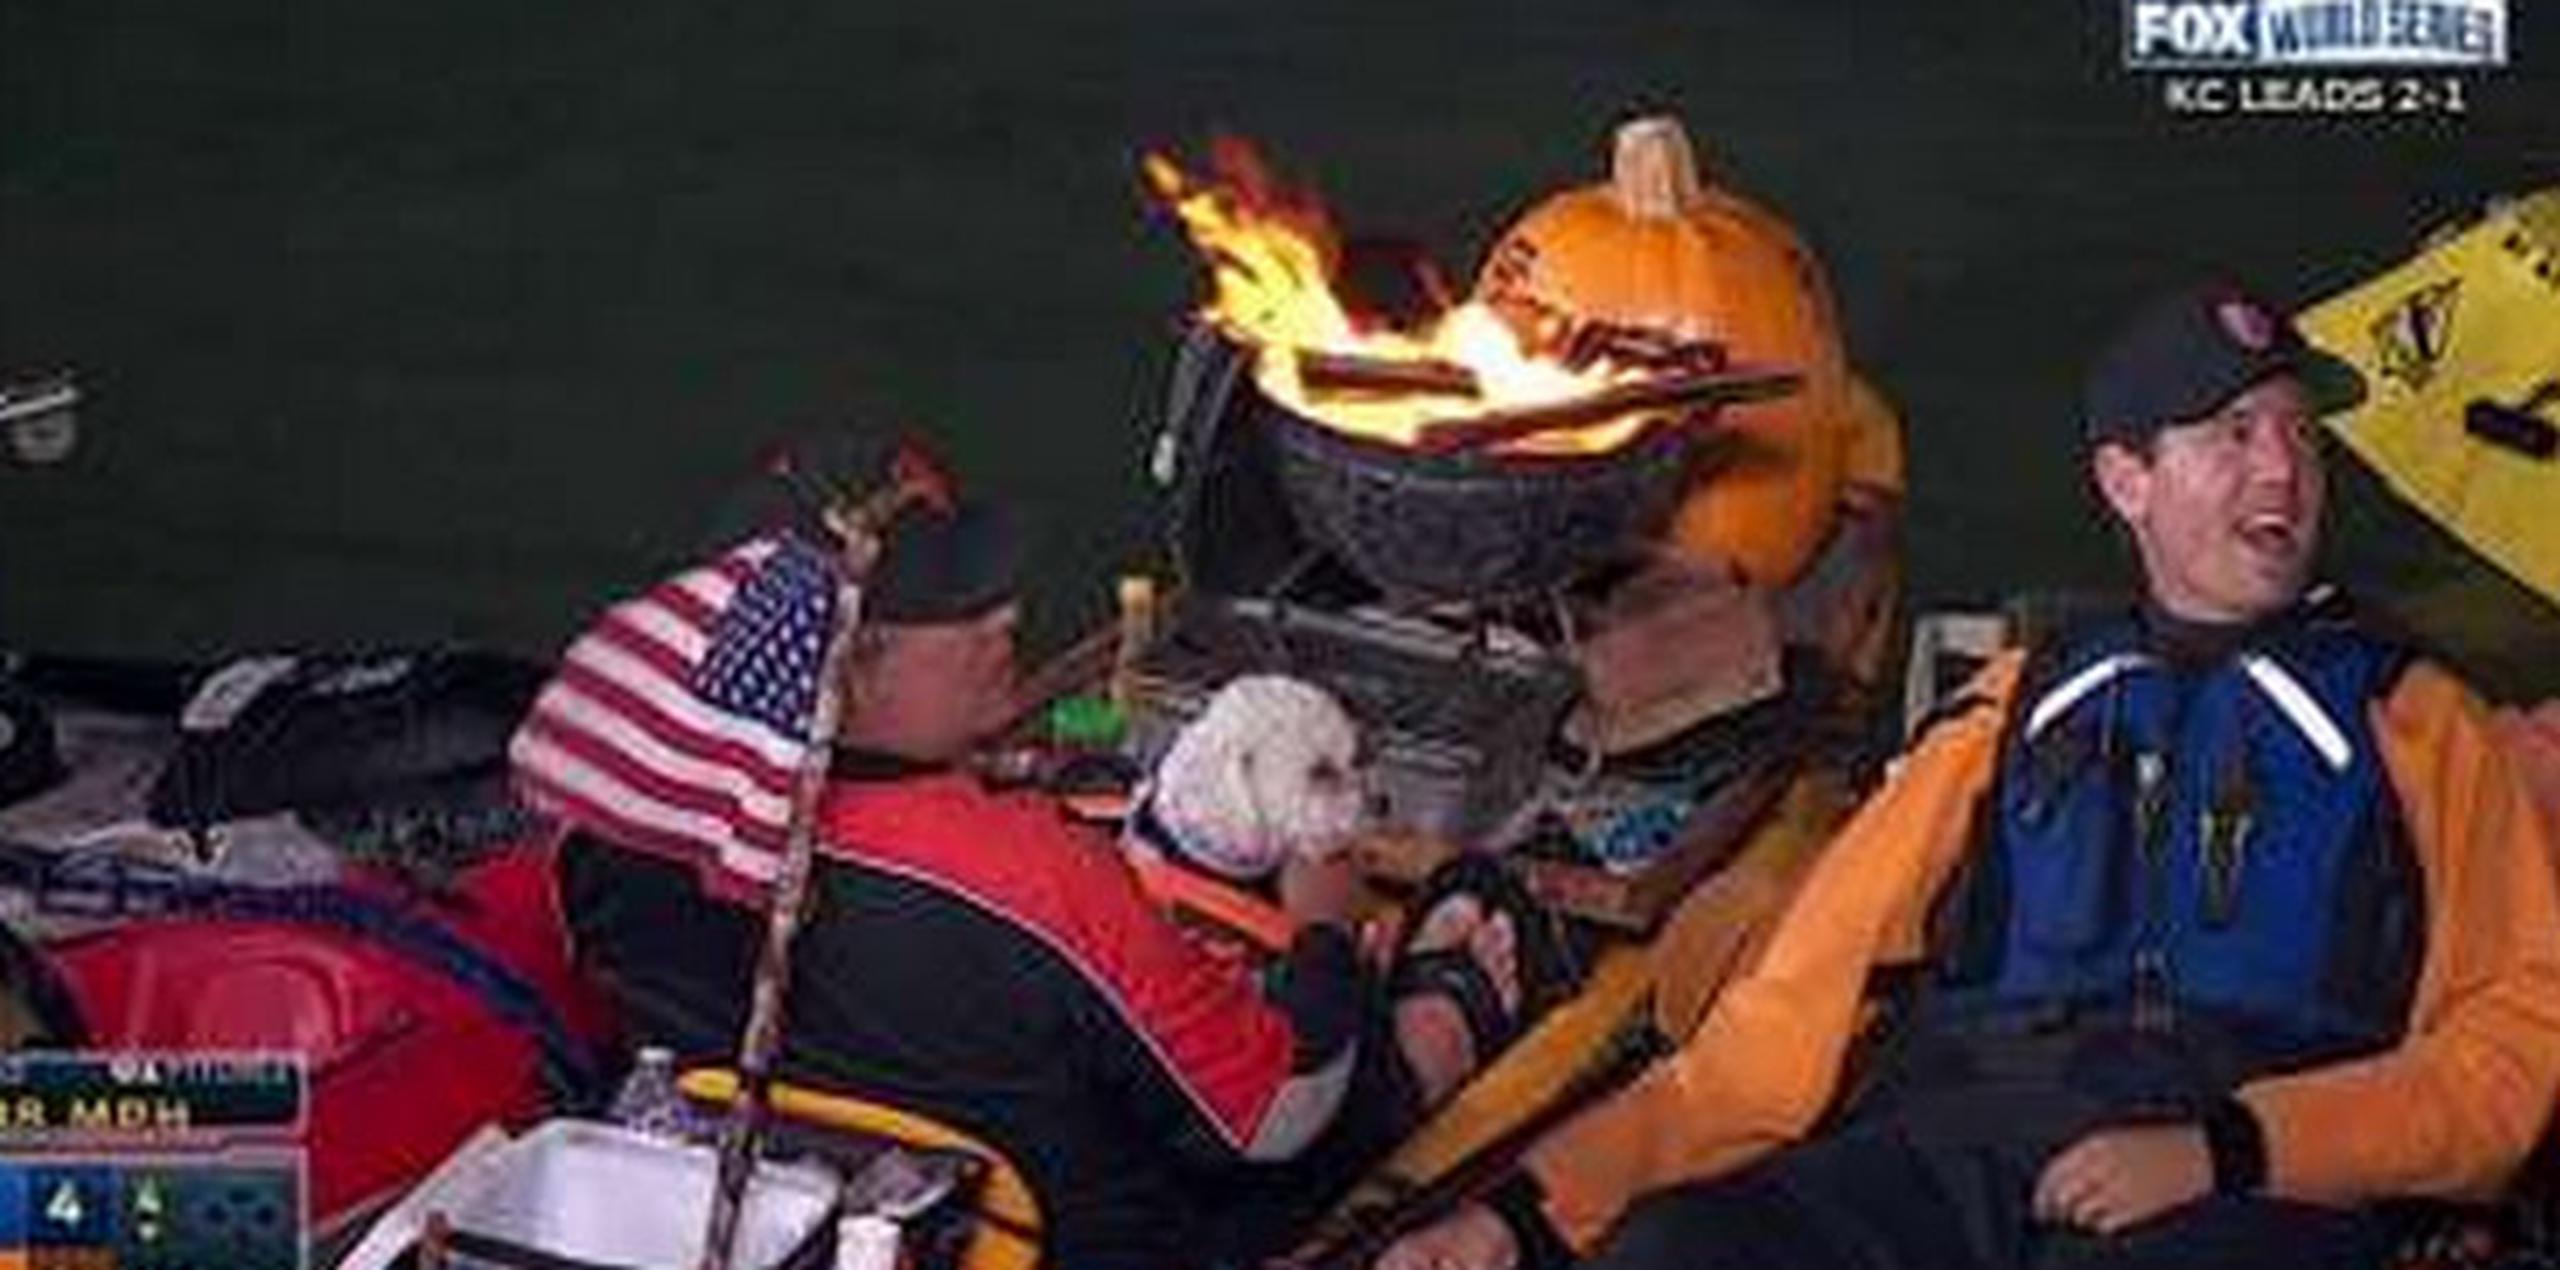 El peligro que representó tener un fuego vivo sobre un kayak de plástico, no amilanó el entusiasmo del hombre.